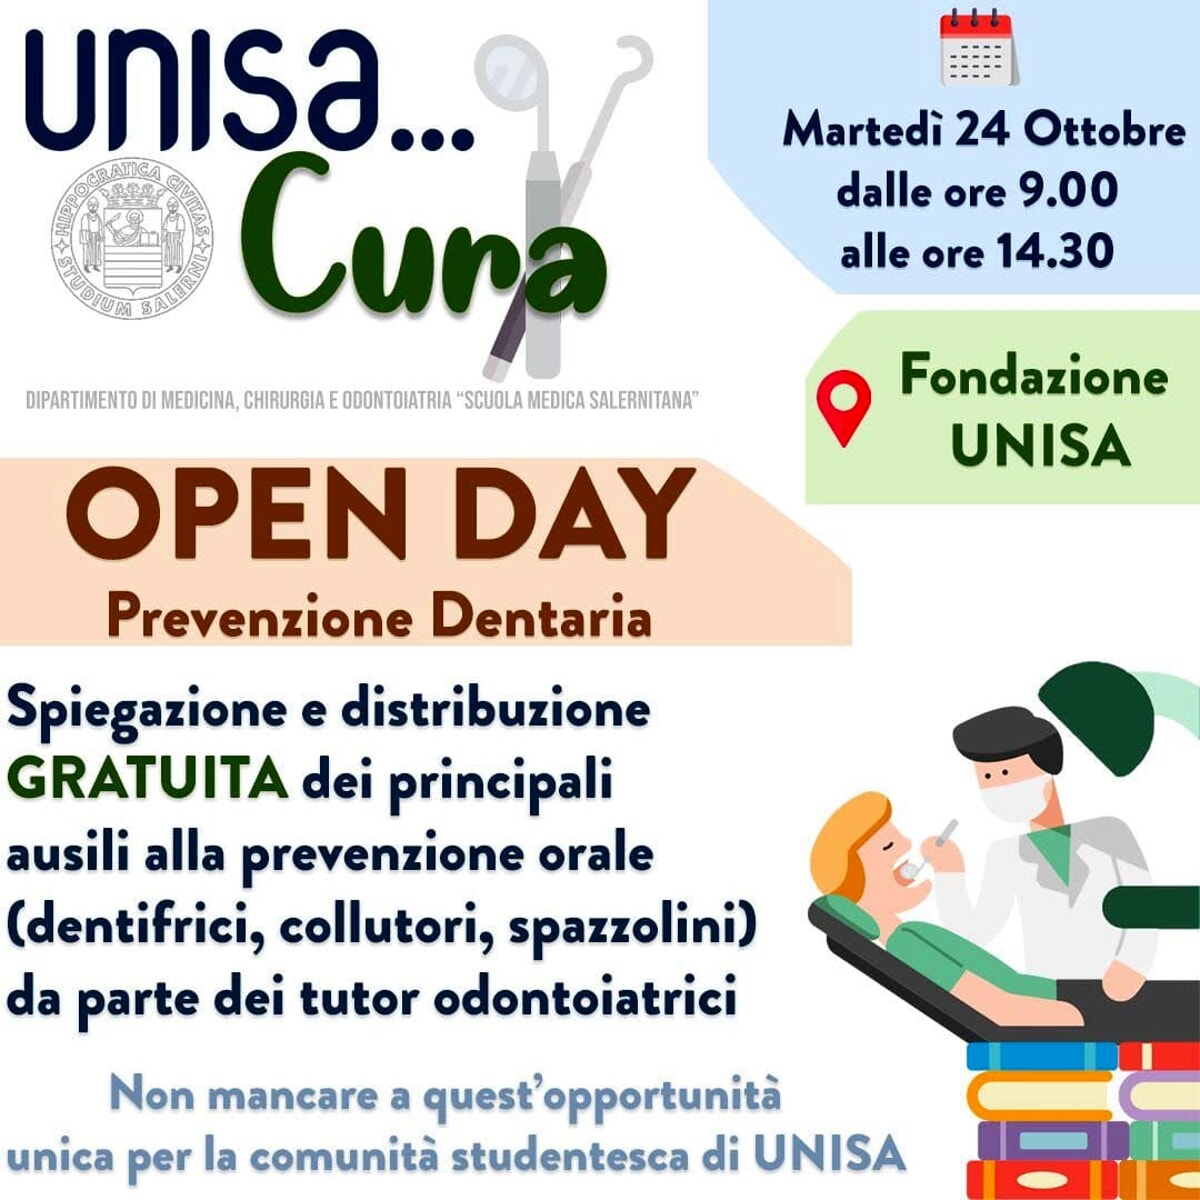 “Unisa….cura”, parte l’open day di prevenzione odontoiatrica